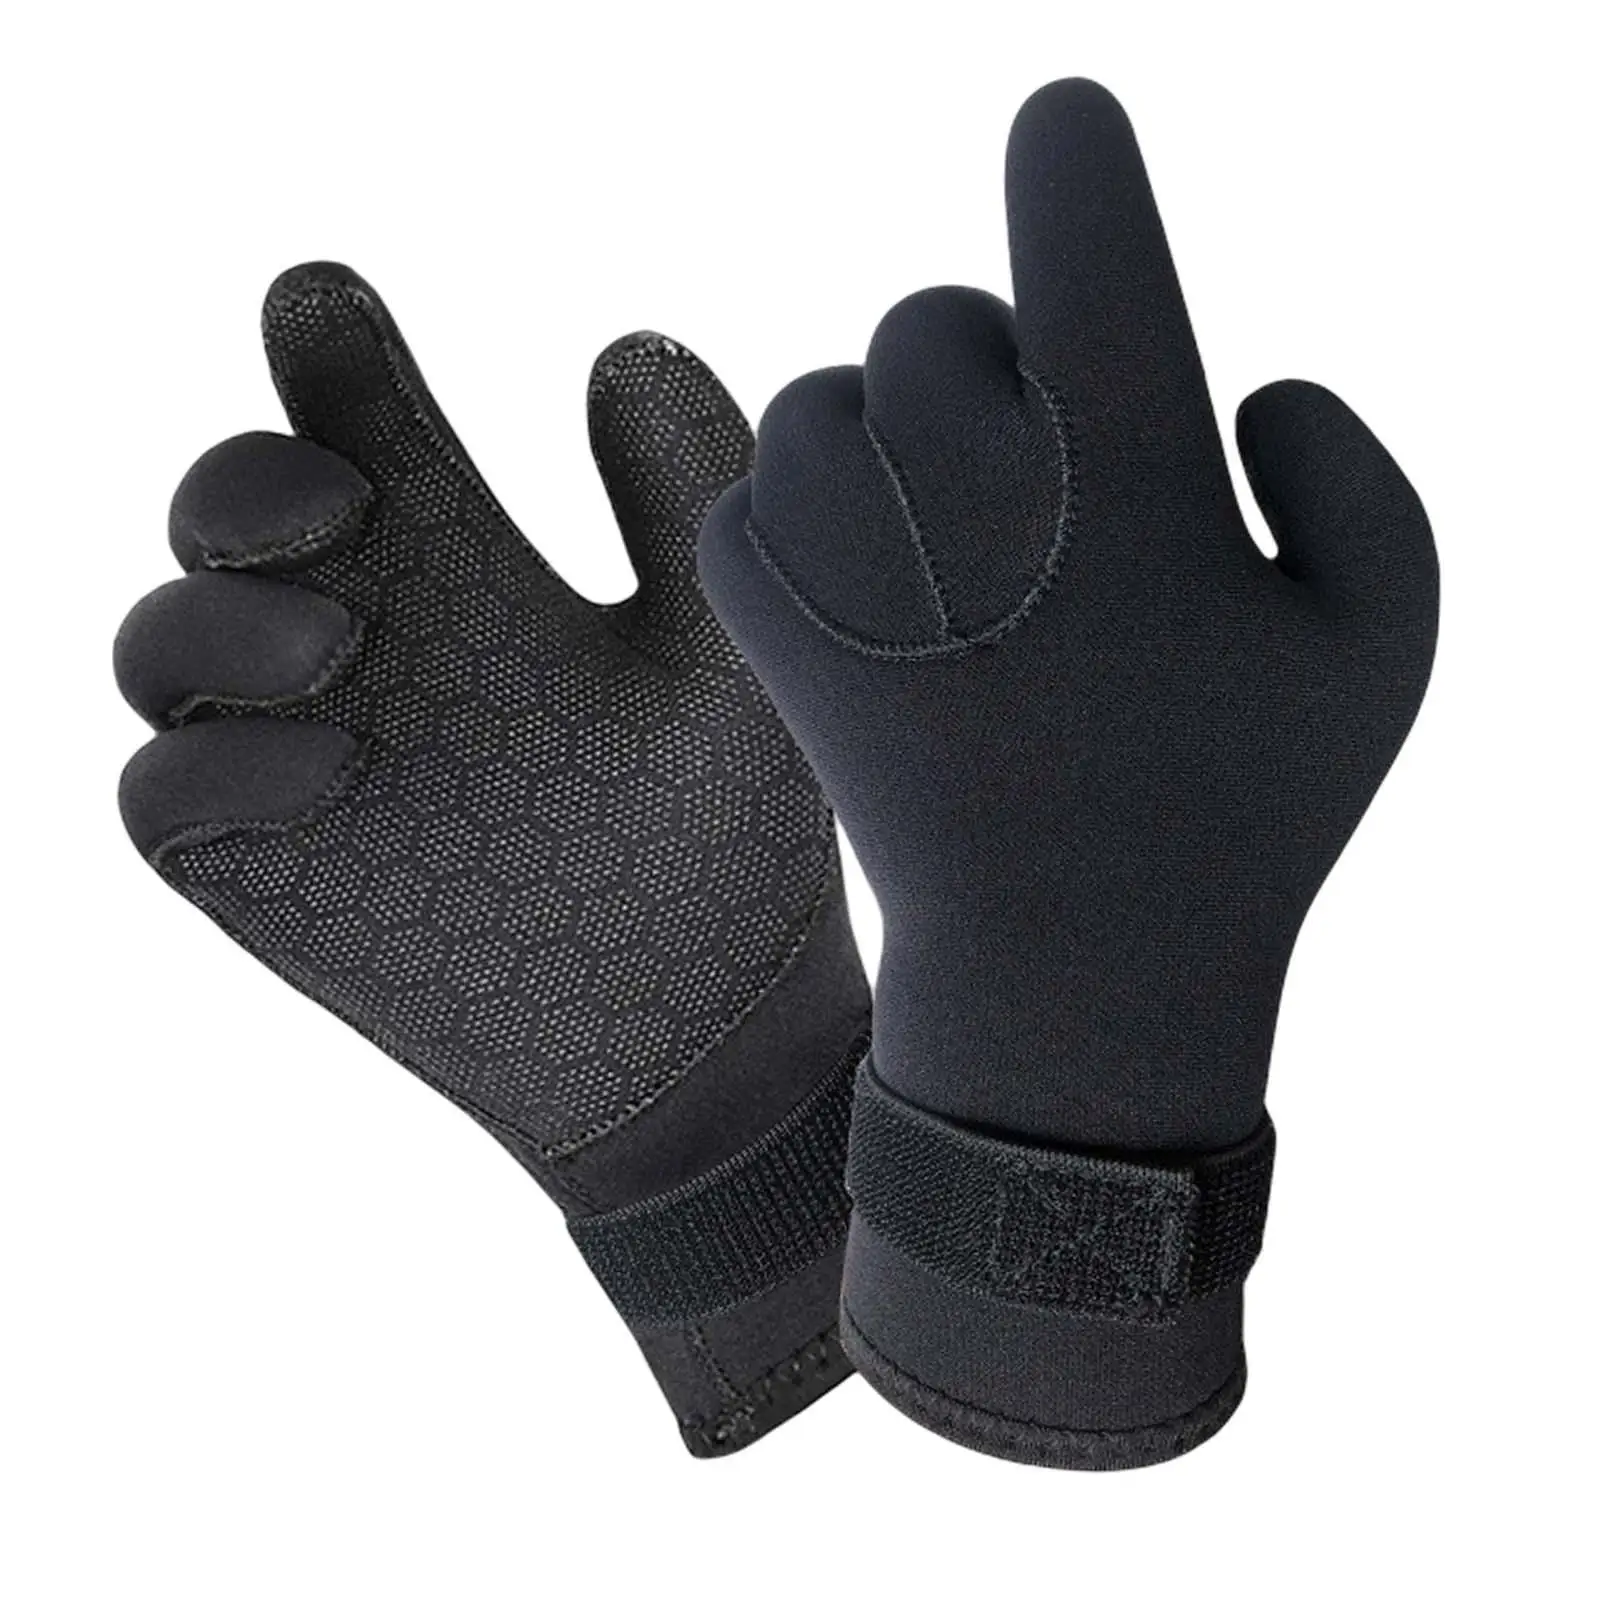 Scuba Diving Gloves Neoprene Wetsuit Gloves Anti Slip Surfing Glove Five Finger Wetsuit Gloves for Kayaking Paddling Rafting